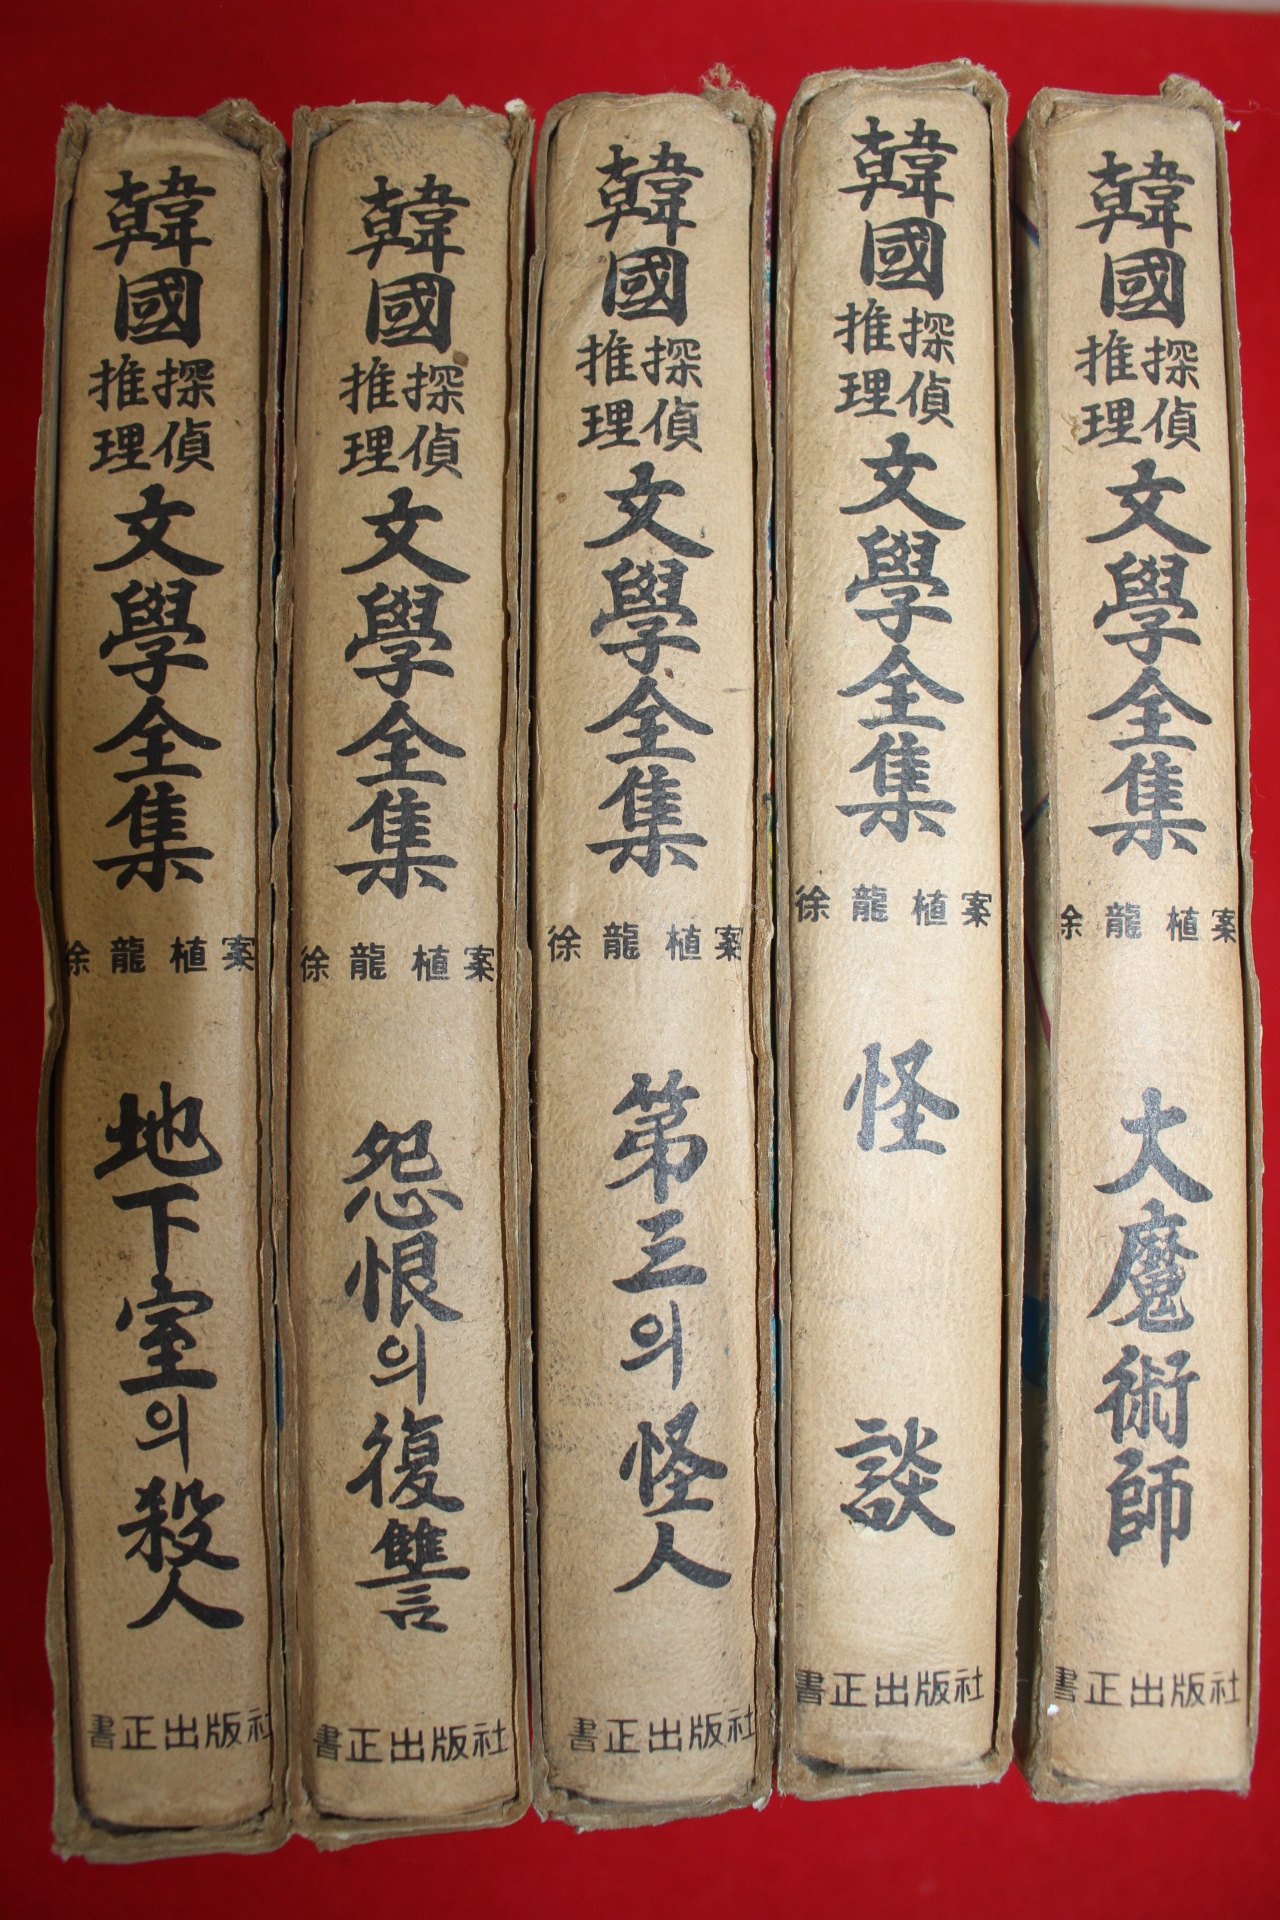 1974년 서용식(徐龍植)案 문학전집 5책